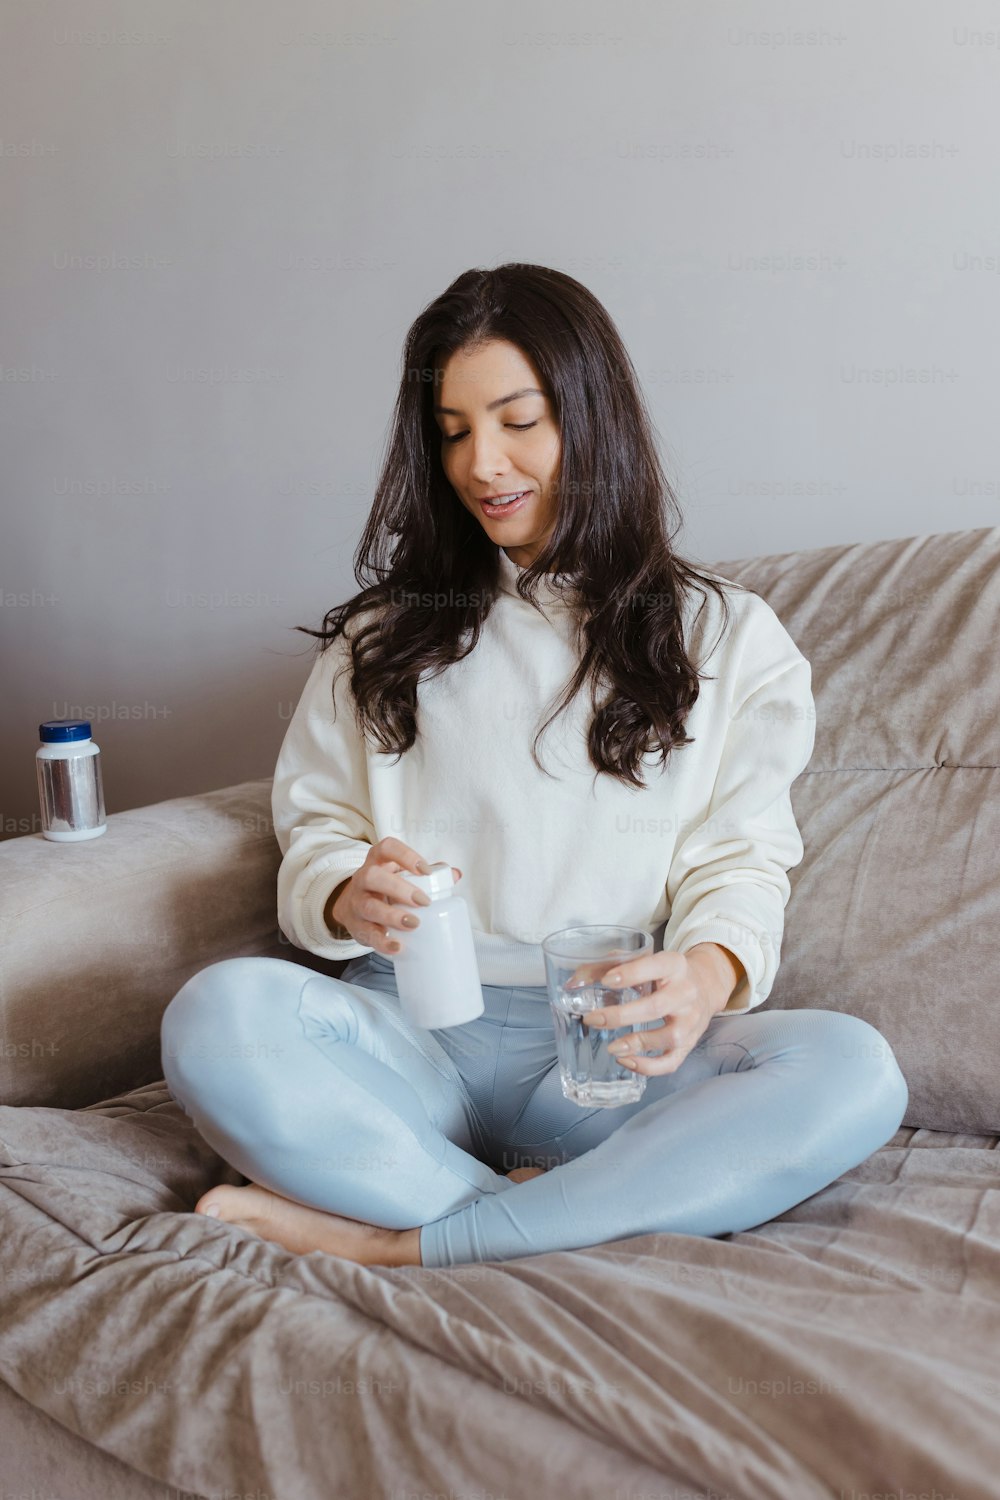 Una mujer sentada en un sofá sosteniendo una botella de agua